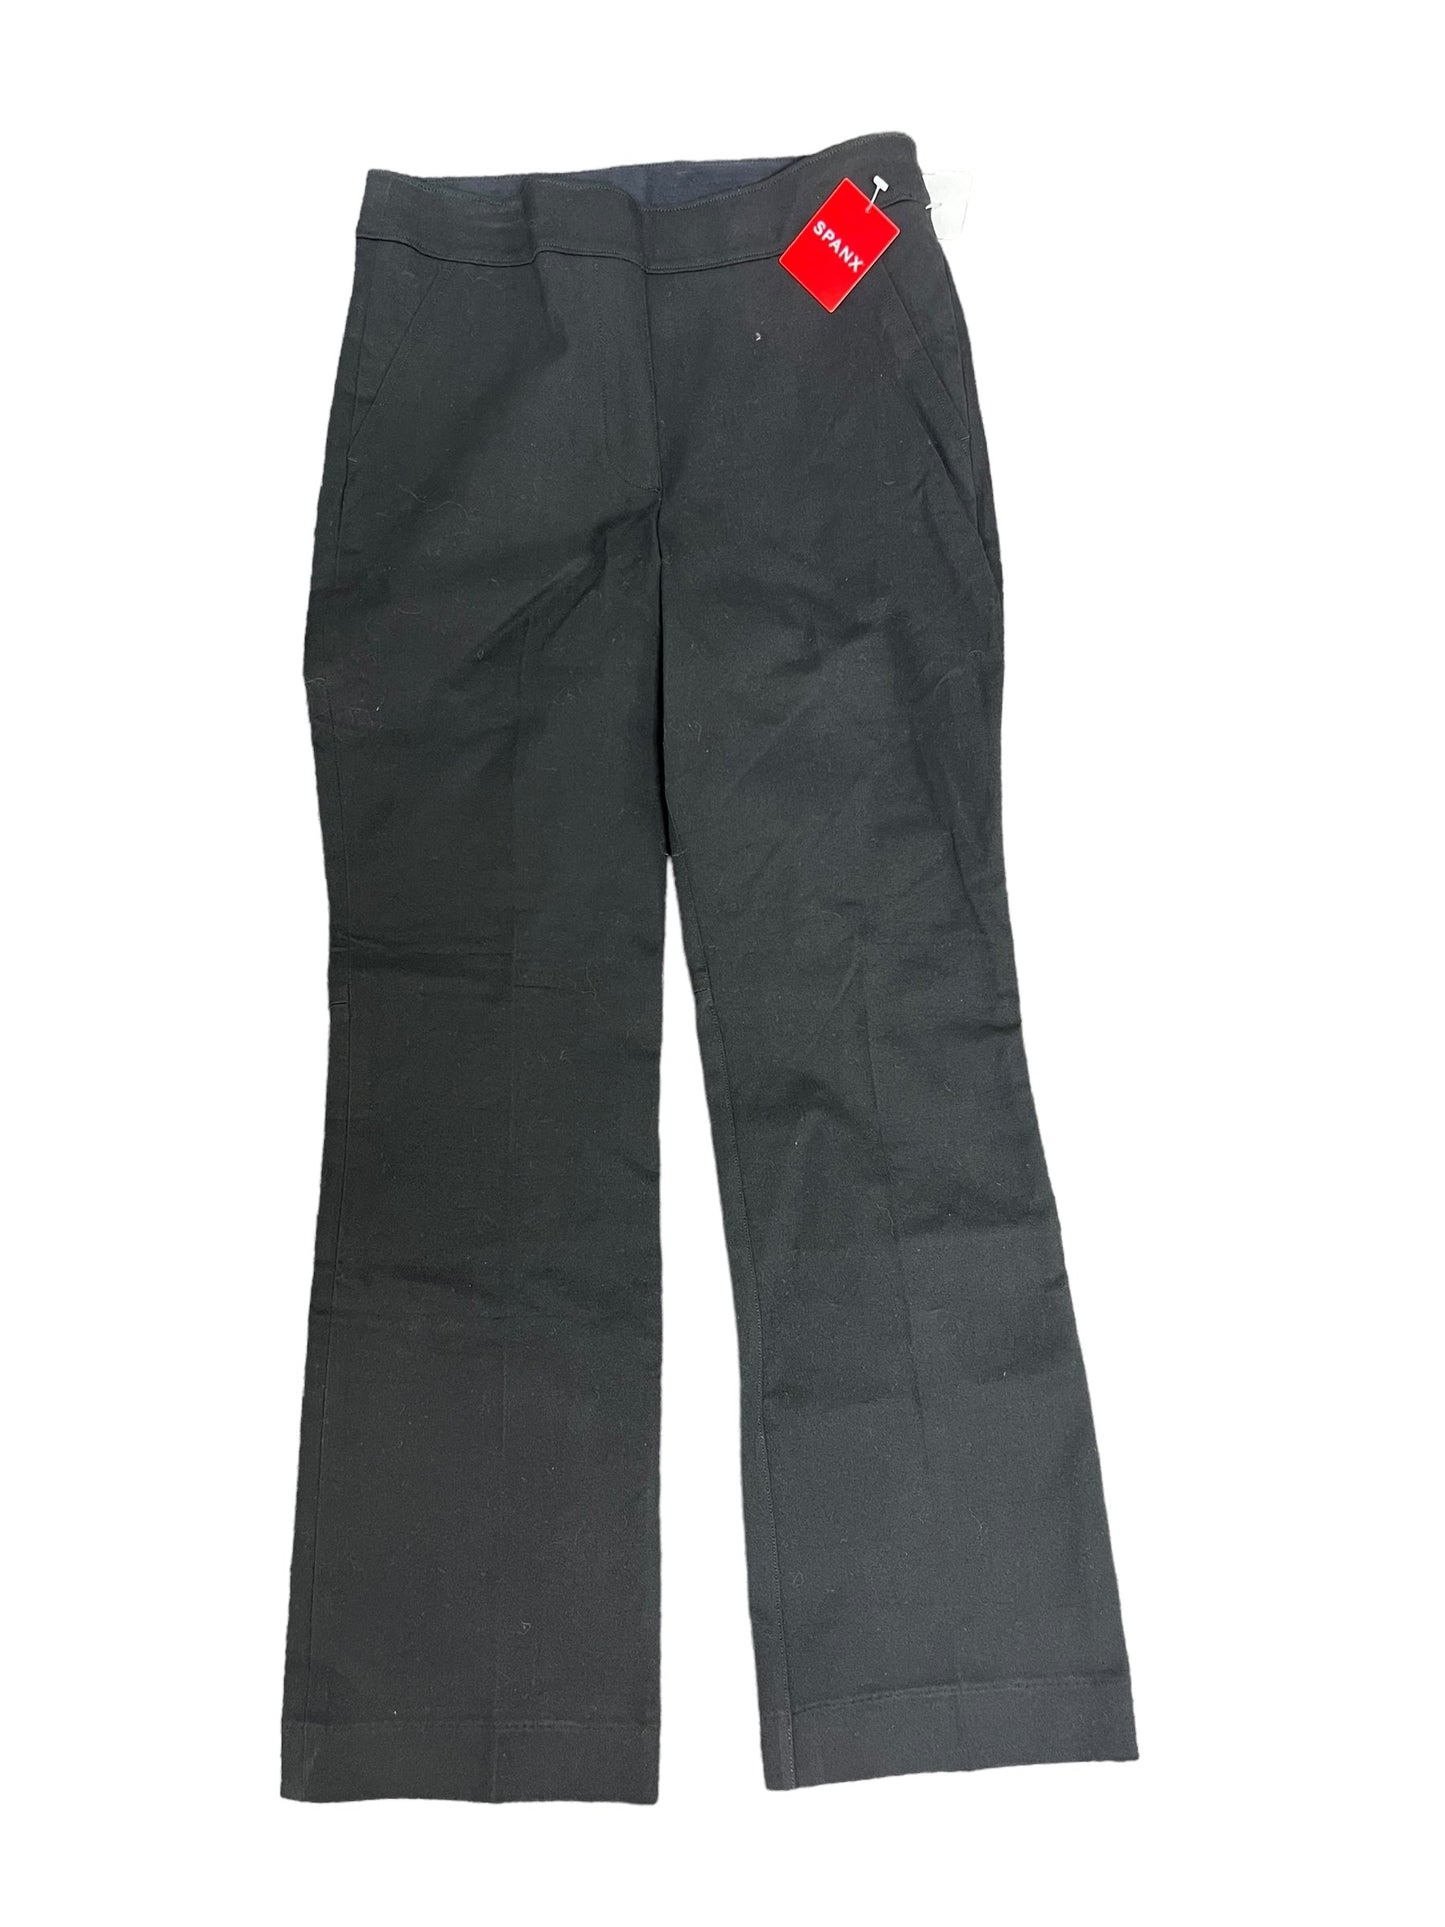 Black Pants Dress Spanx, Size S